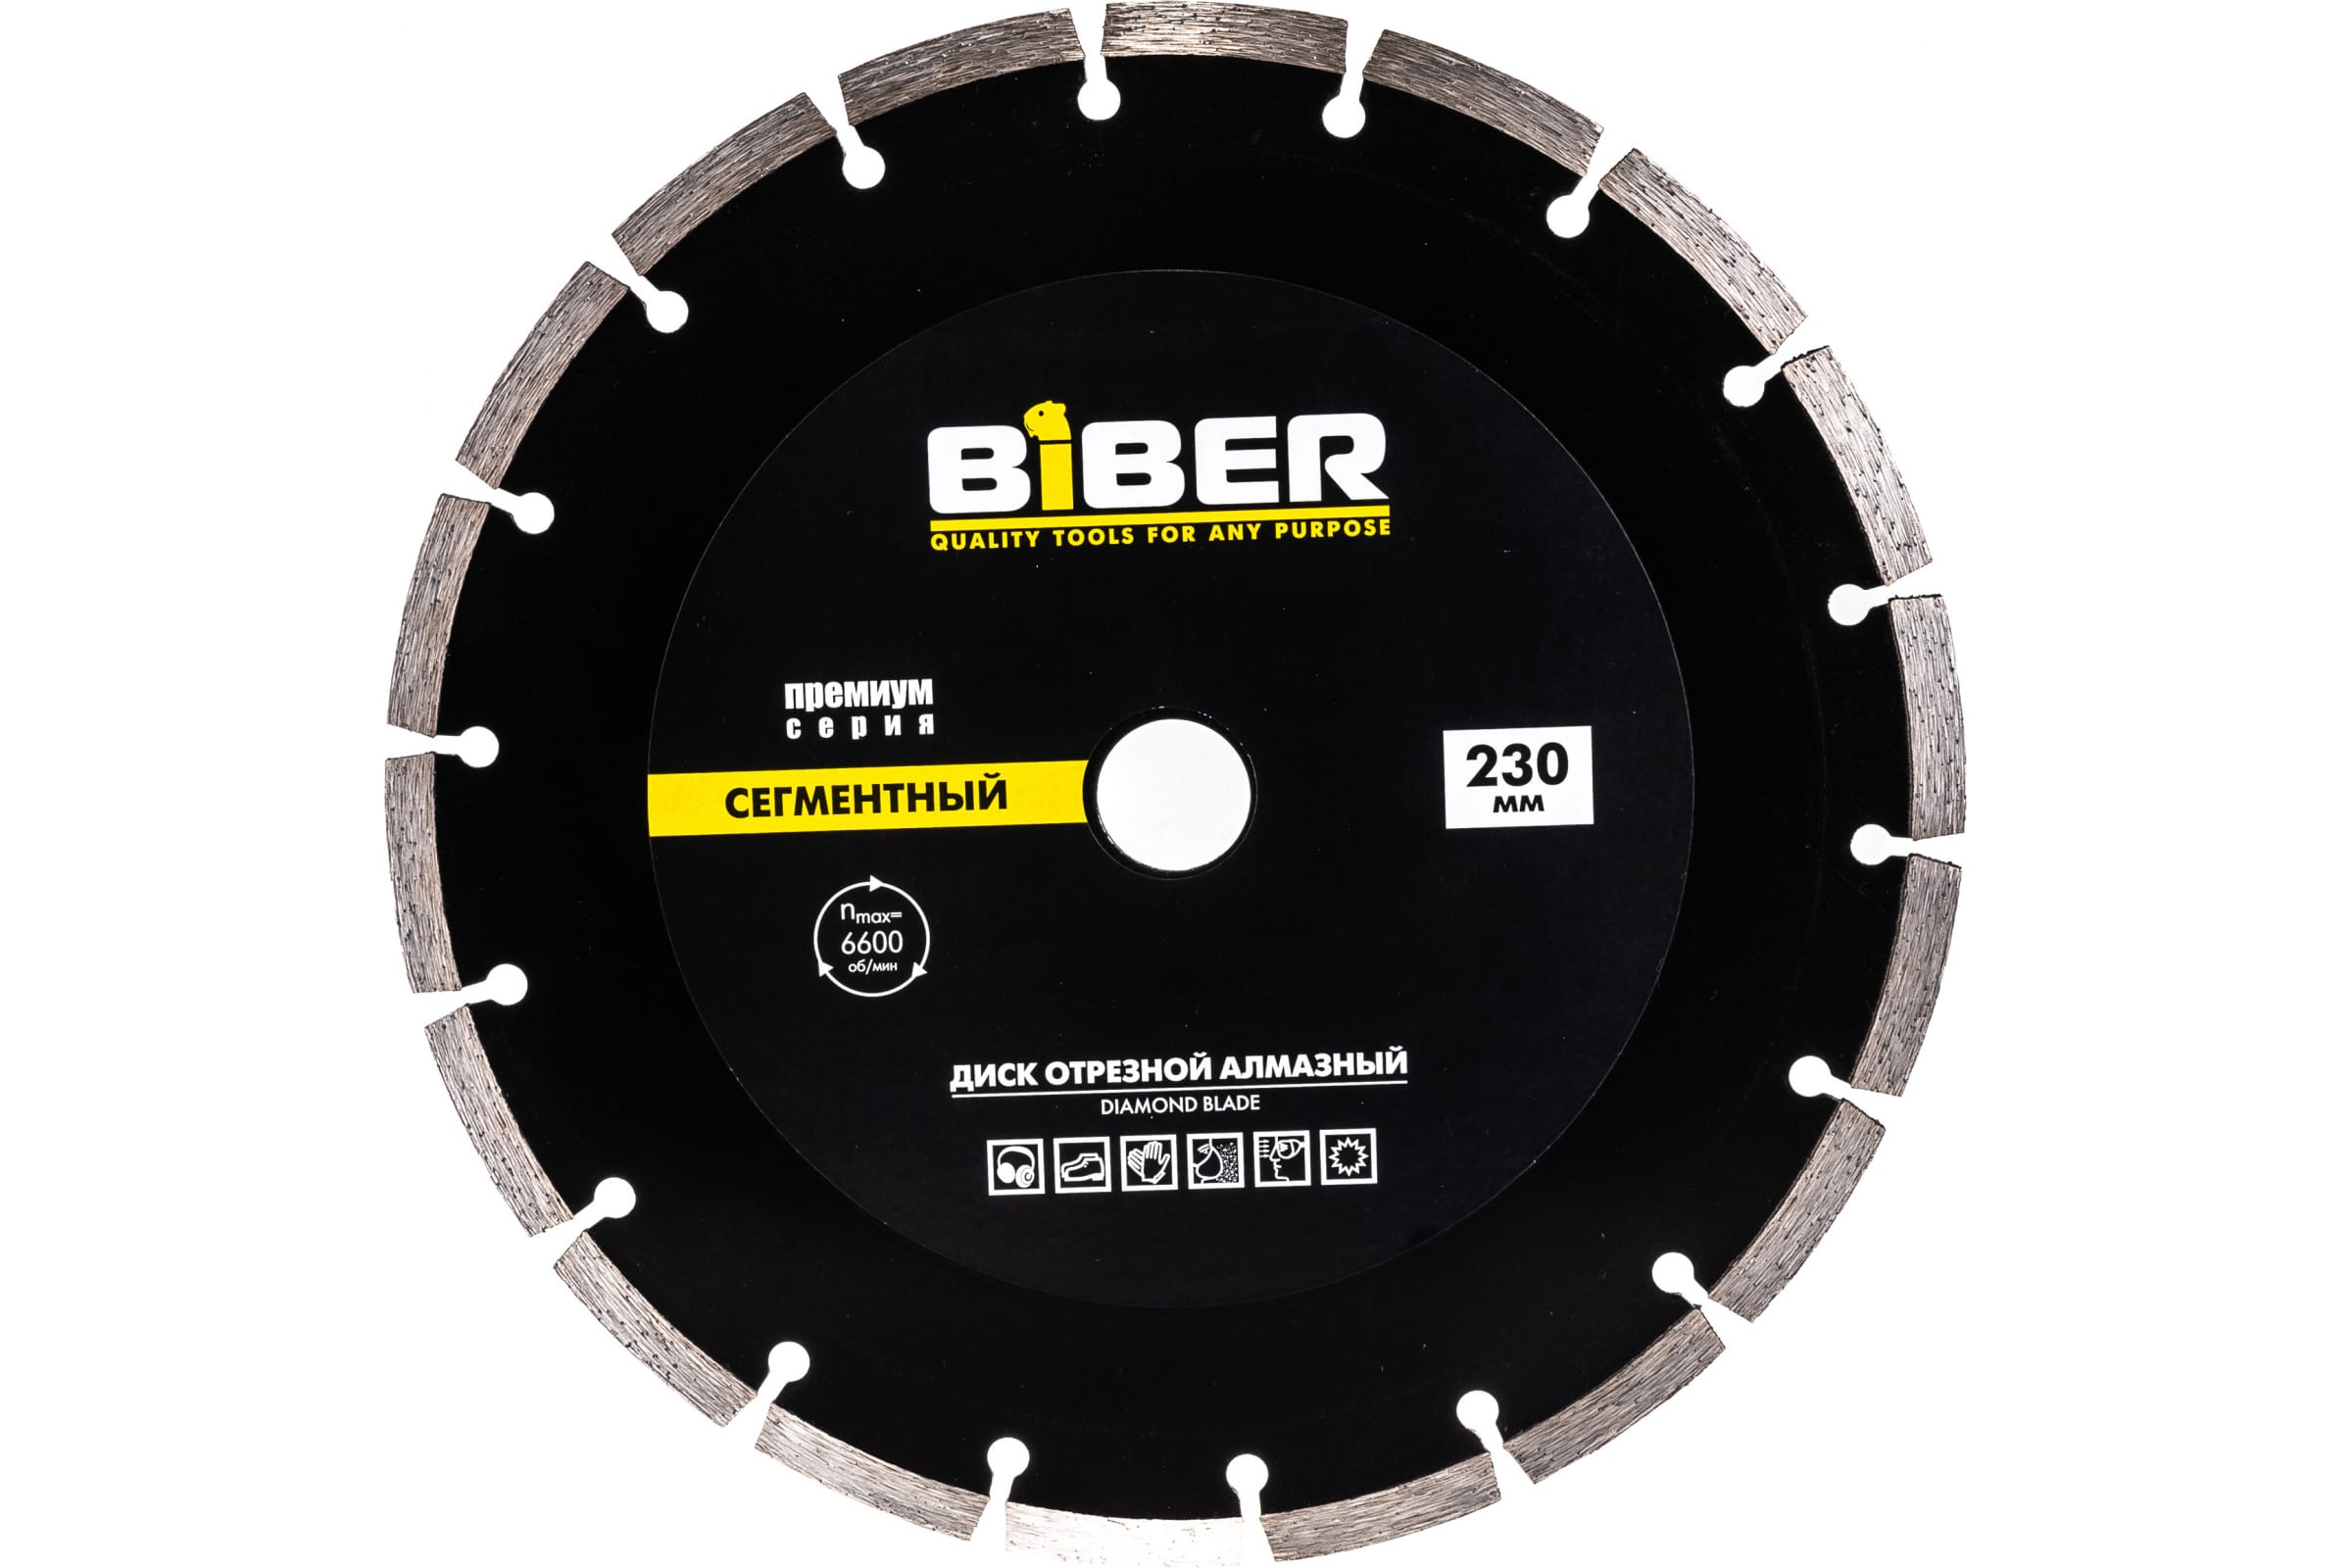 Biber Диск алмазный сегментный Премиум 230мм 70266 тов-039554 наждачный брусок biber